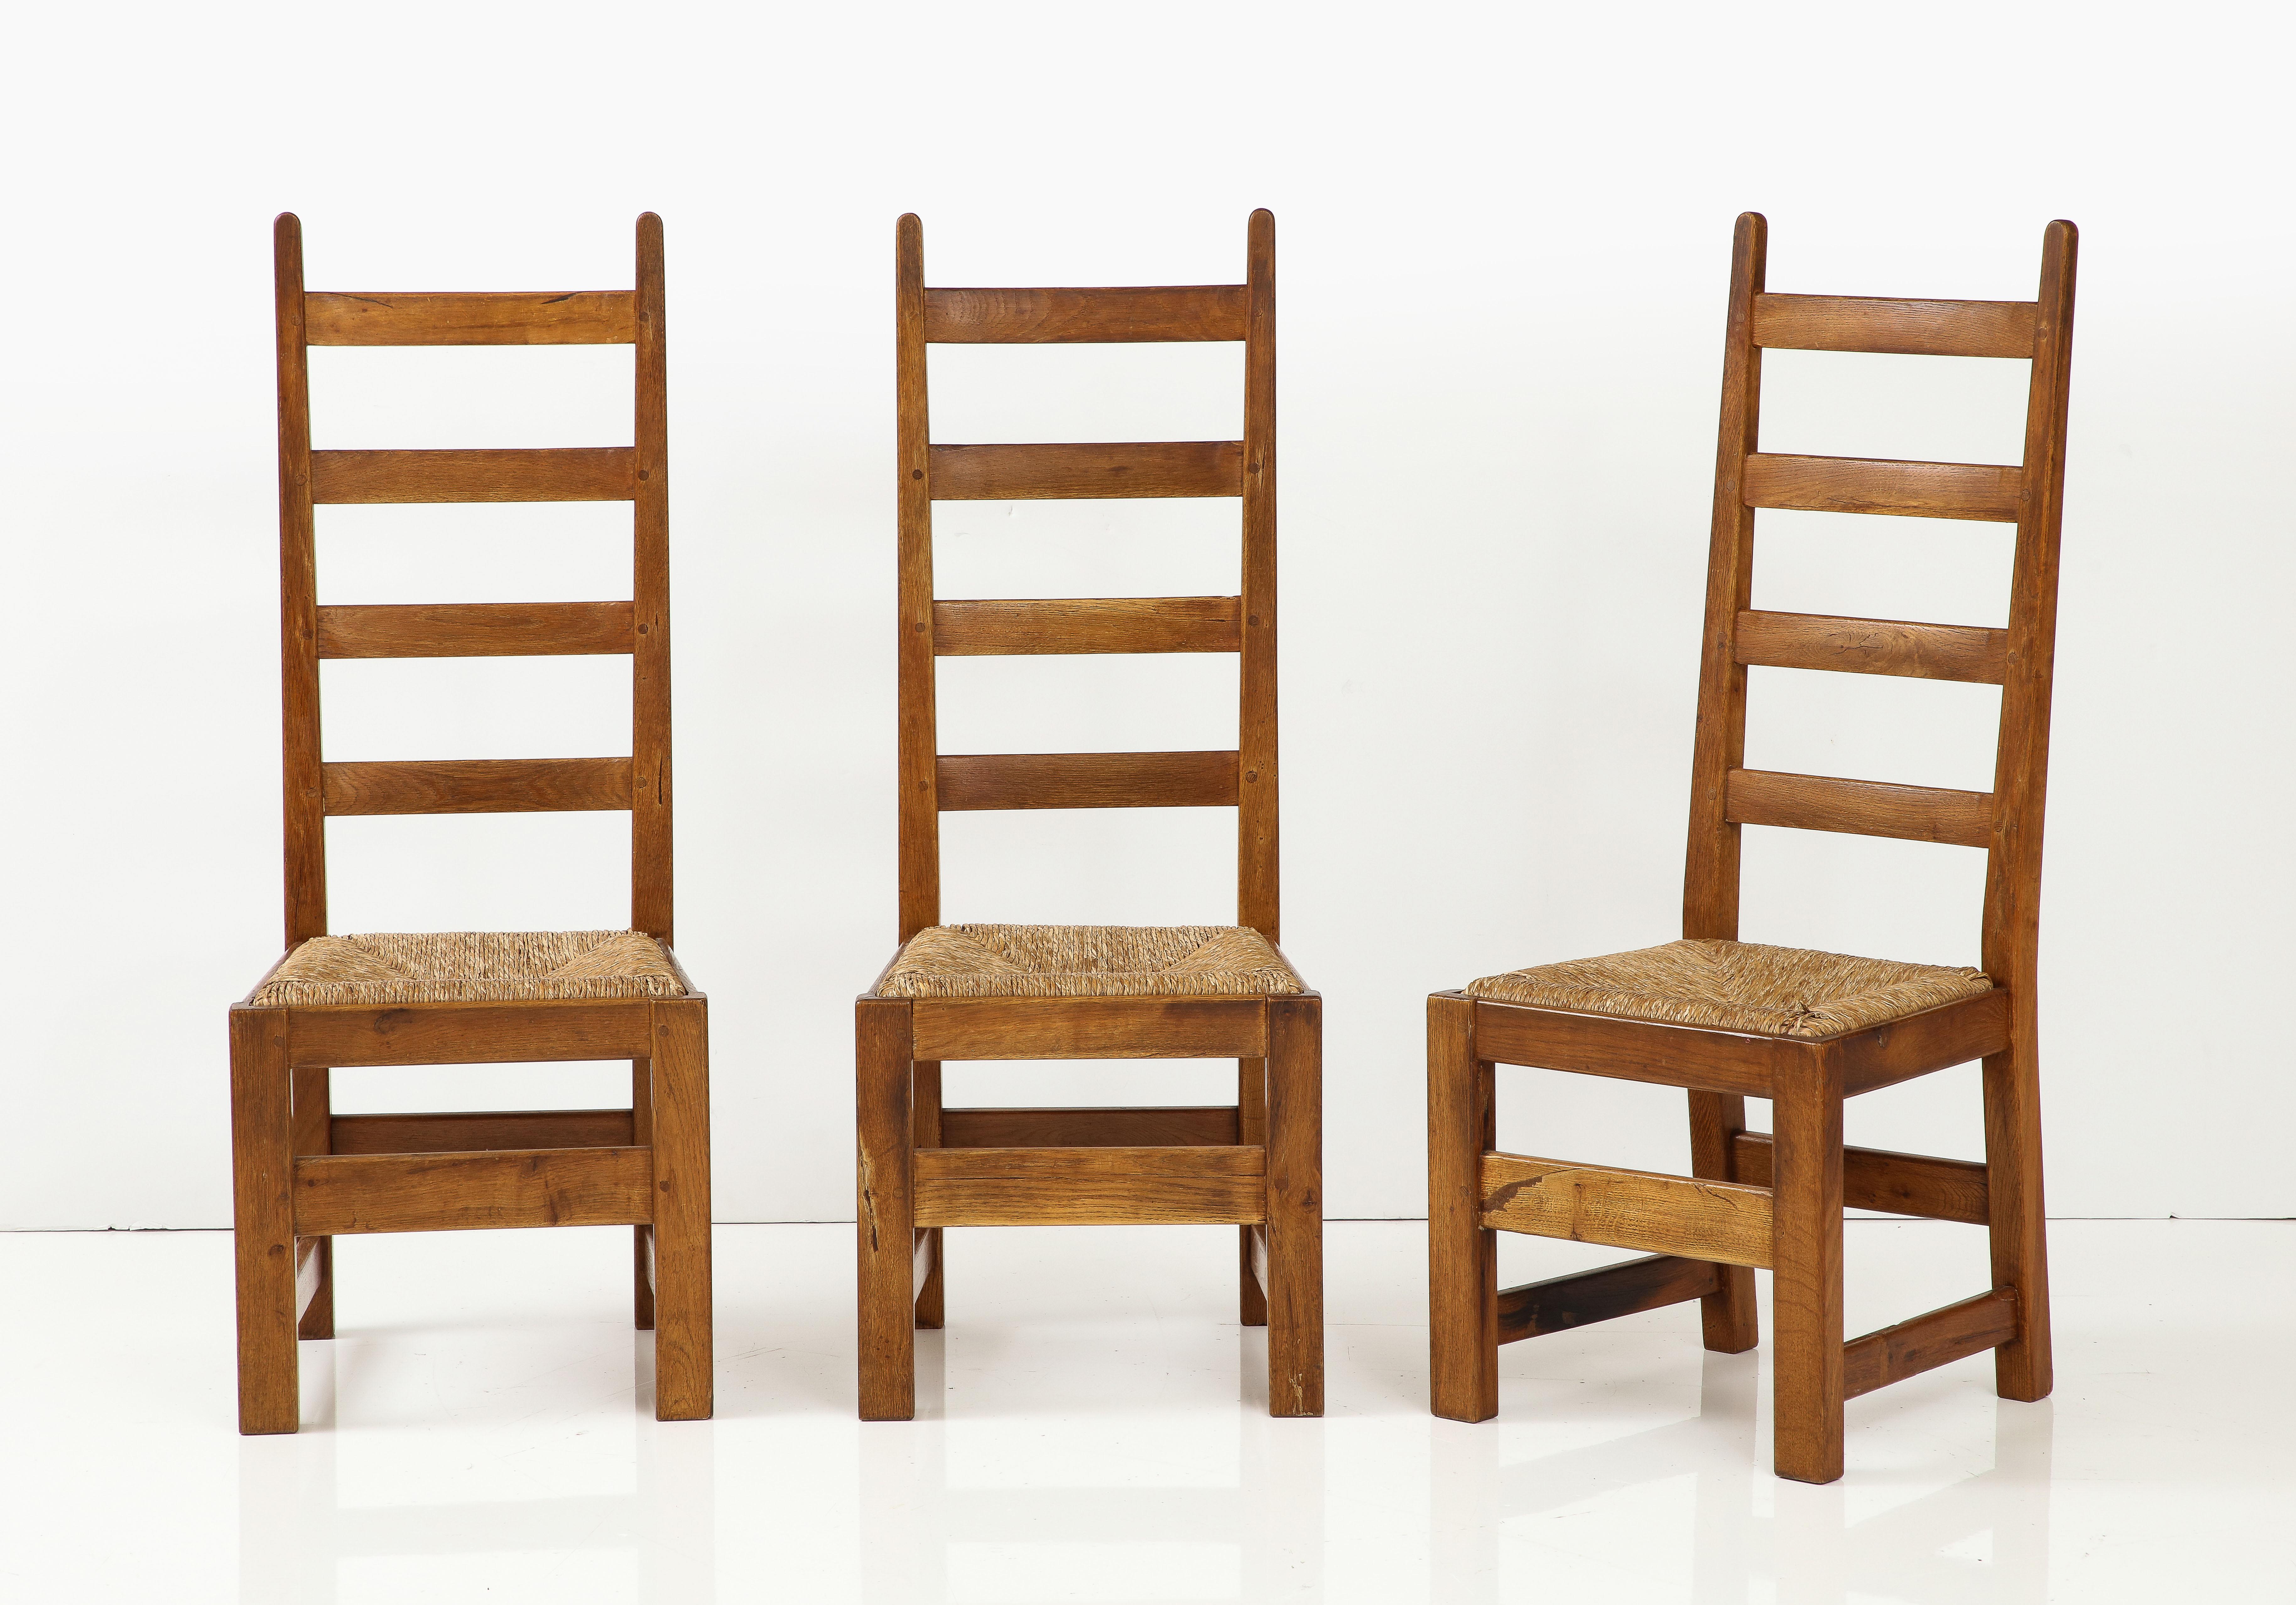 Ensemble de six chaises modernes rustiques en chêne français et jonc avec dossiers hauts, c. 1950, signées
Chêne, jonc

Siège h : 17.75 in.
46 ¾ in. x 18 ½ in. x 17 in.